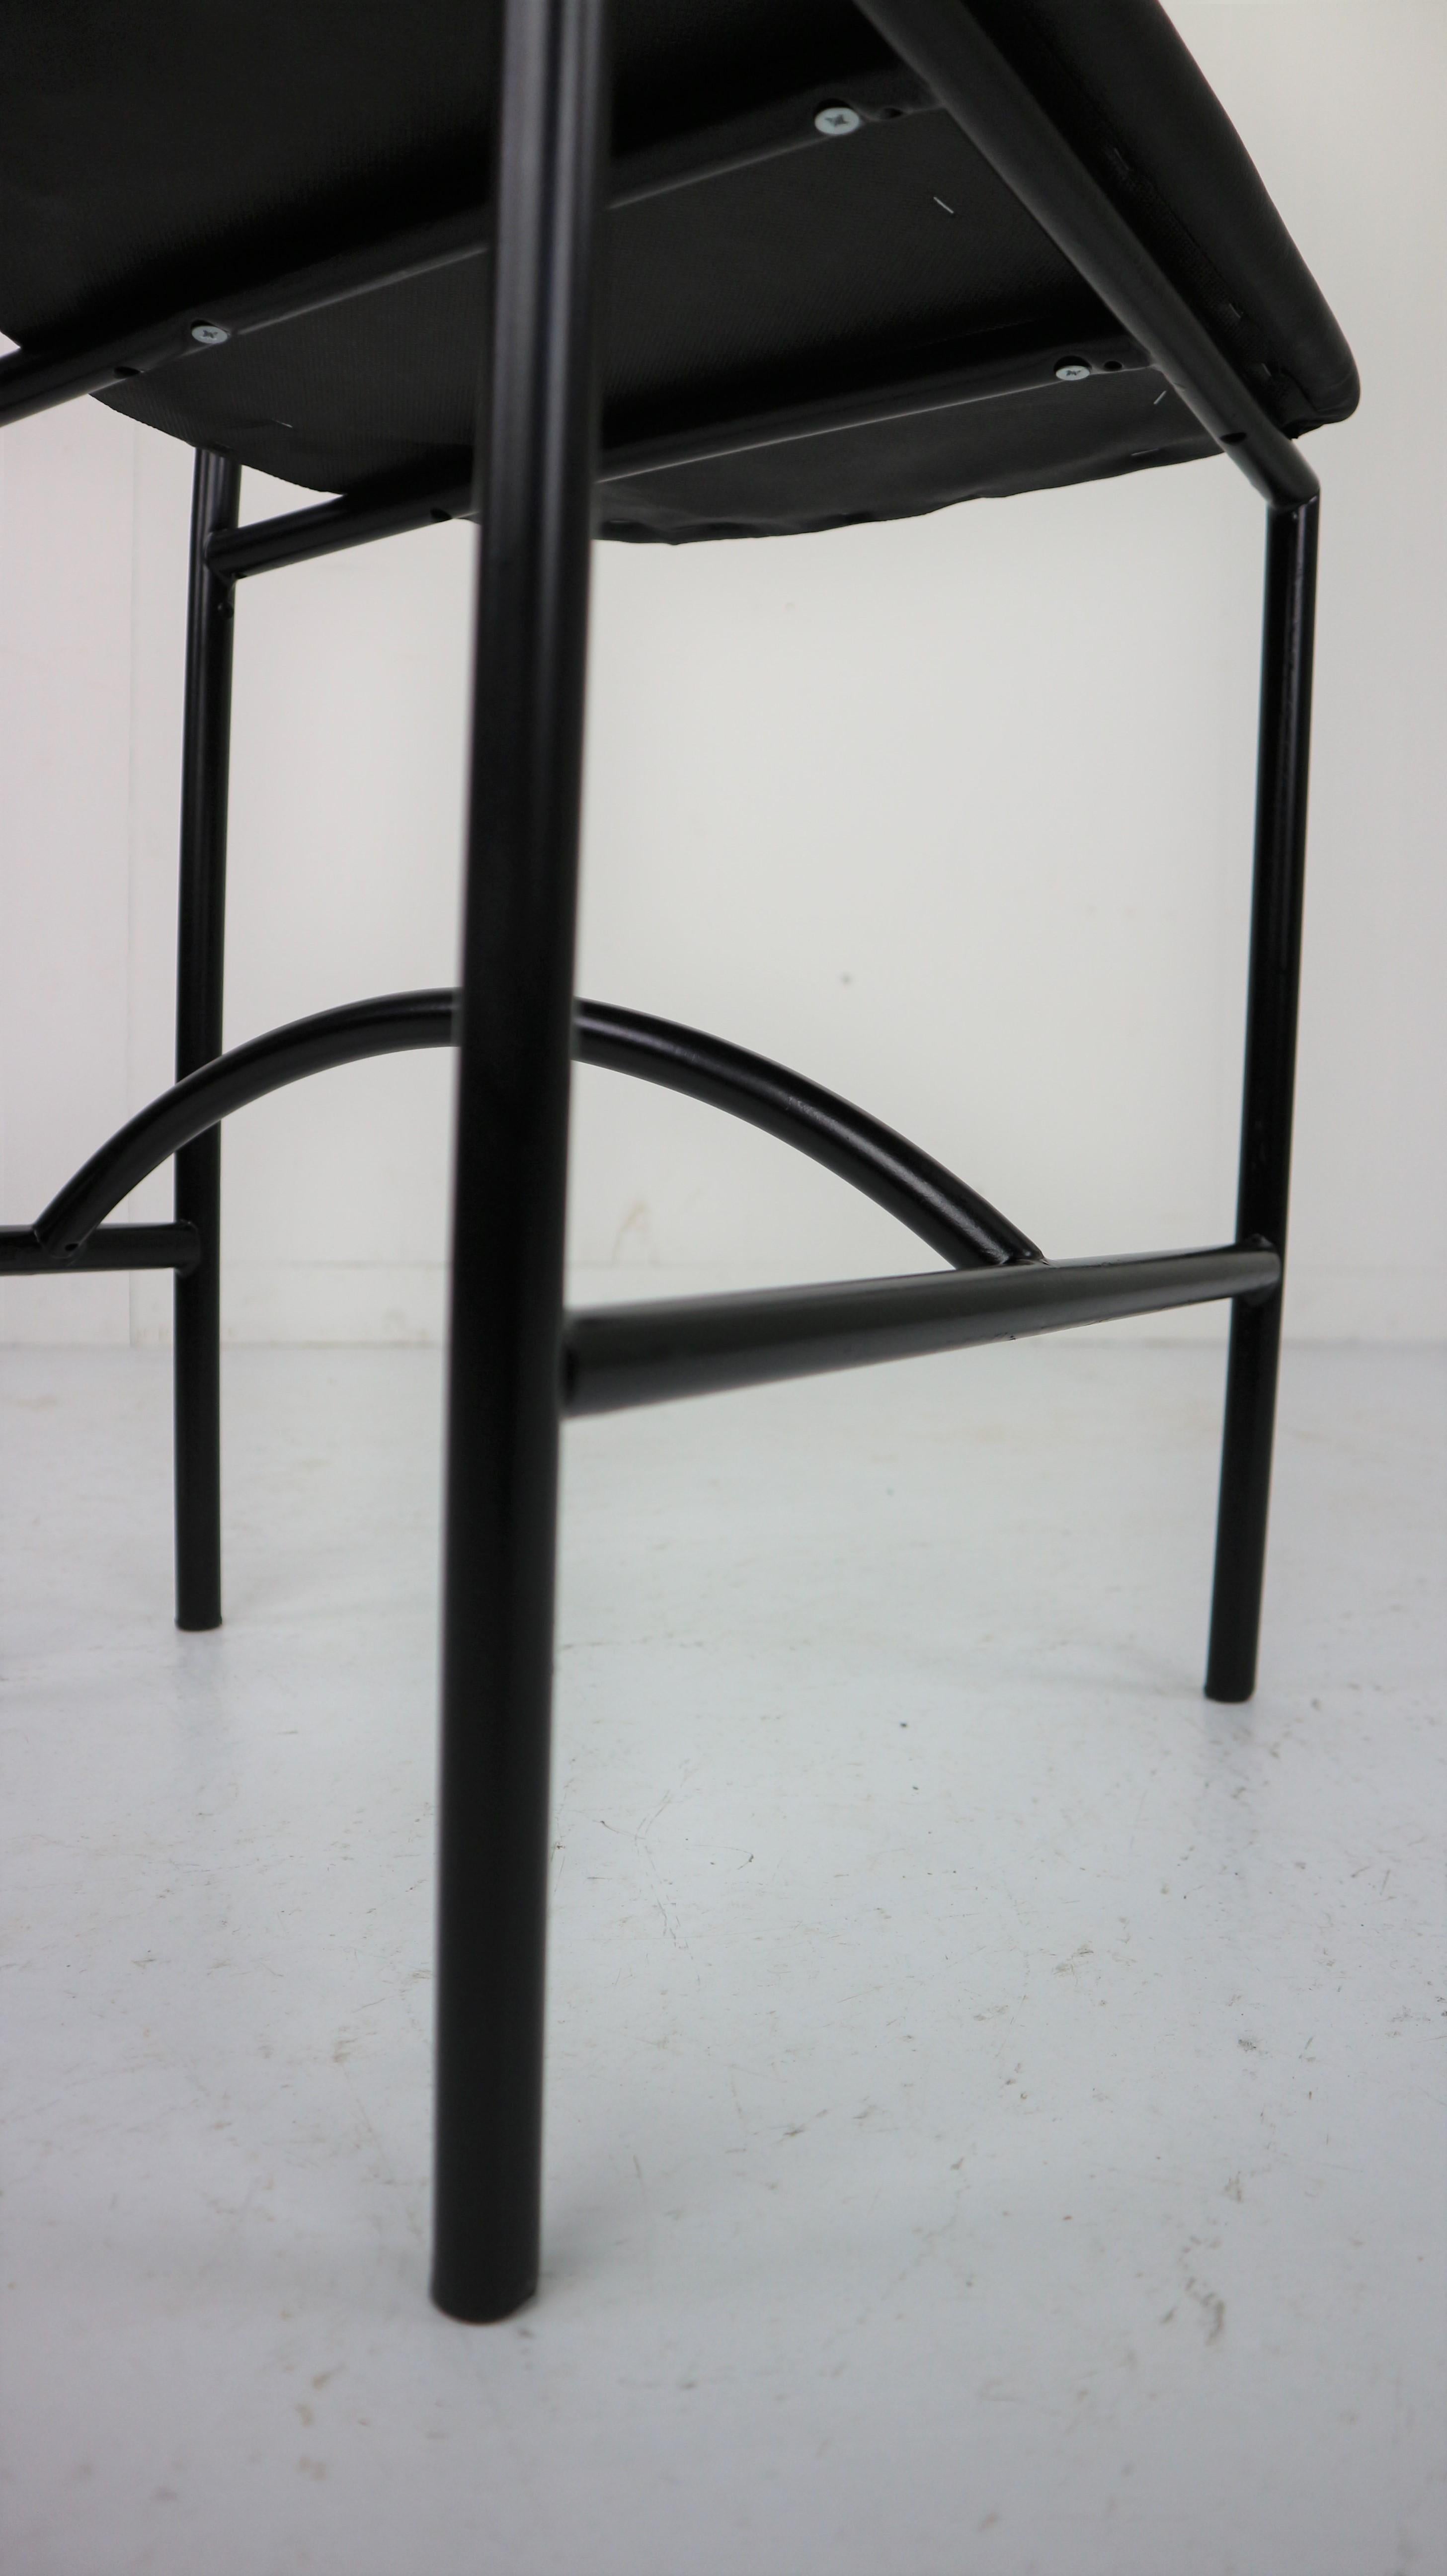 Bieffeplast 'Tokyo' Chair by Rodney Kinsman, 1985, Italy 4